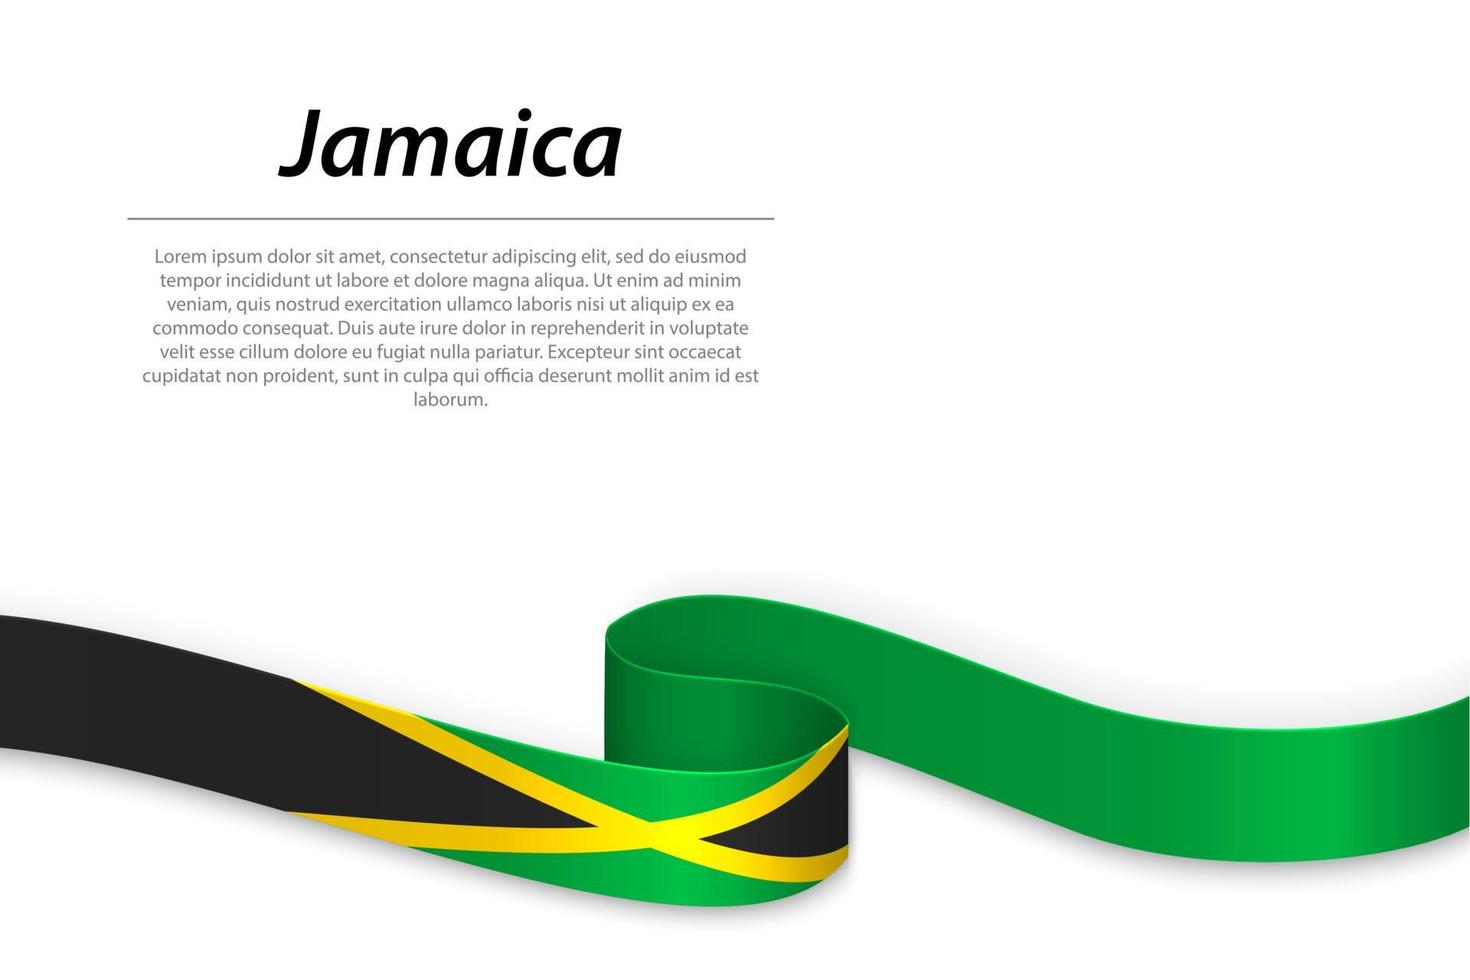 schwenkendes band oder banner mit flagge von jamaika vektor